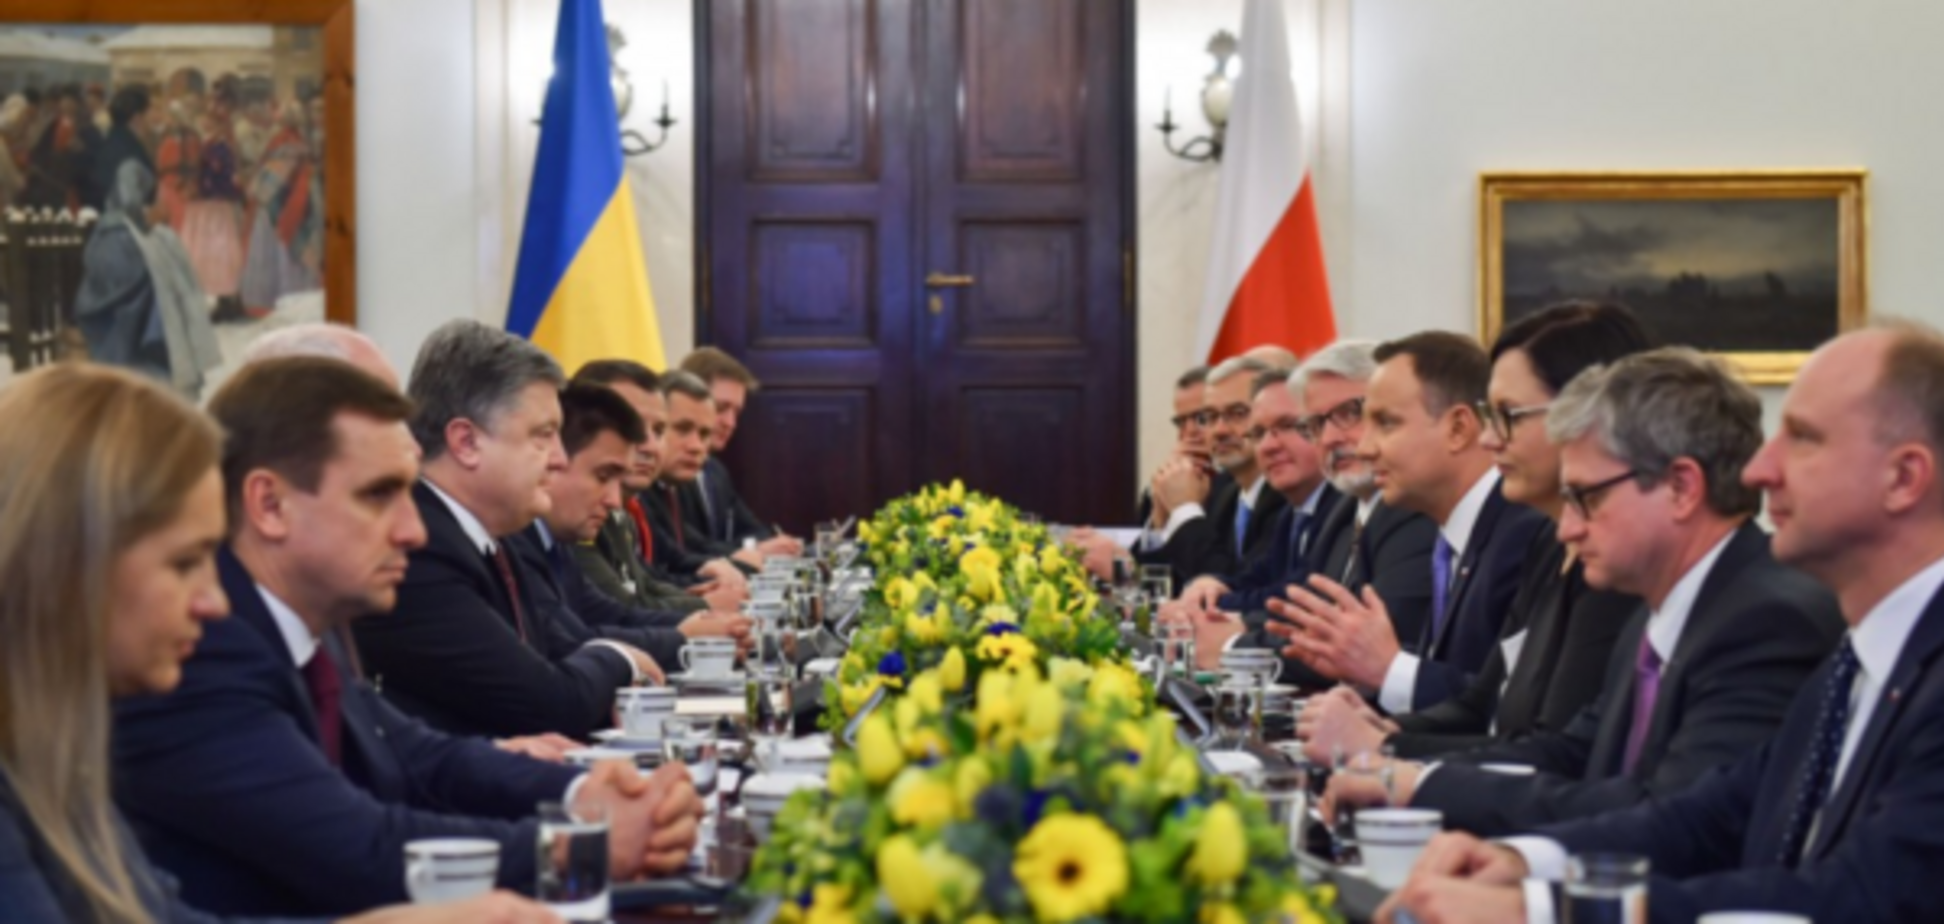 Круговая оборона: Украина и Польше решили действовать вместе